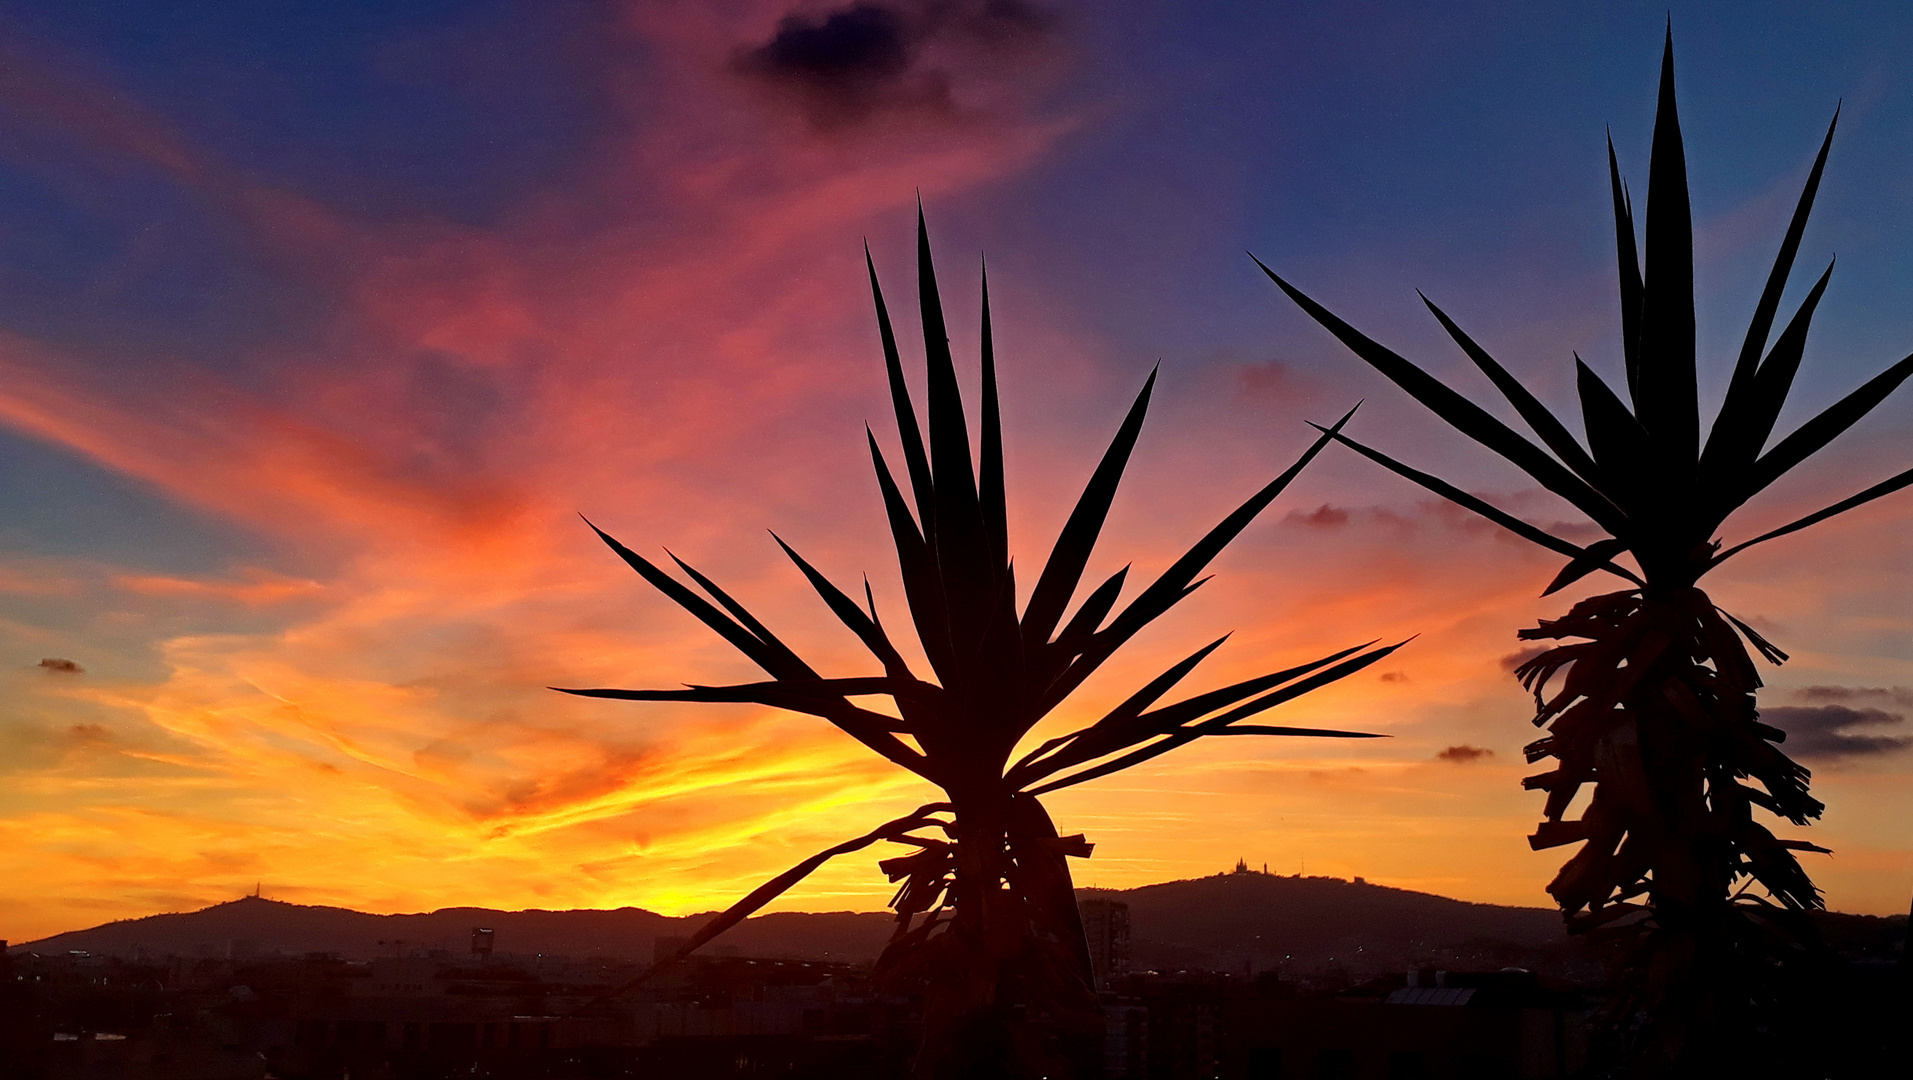 Sunset over Tibidabo